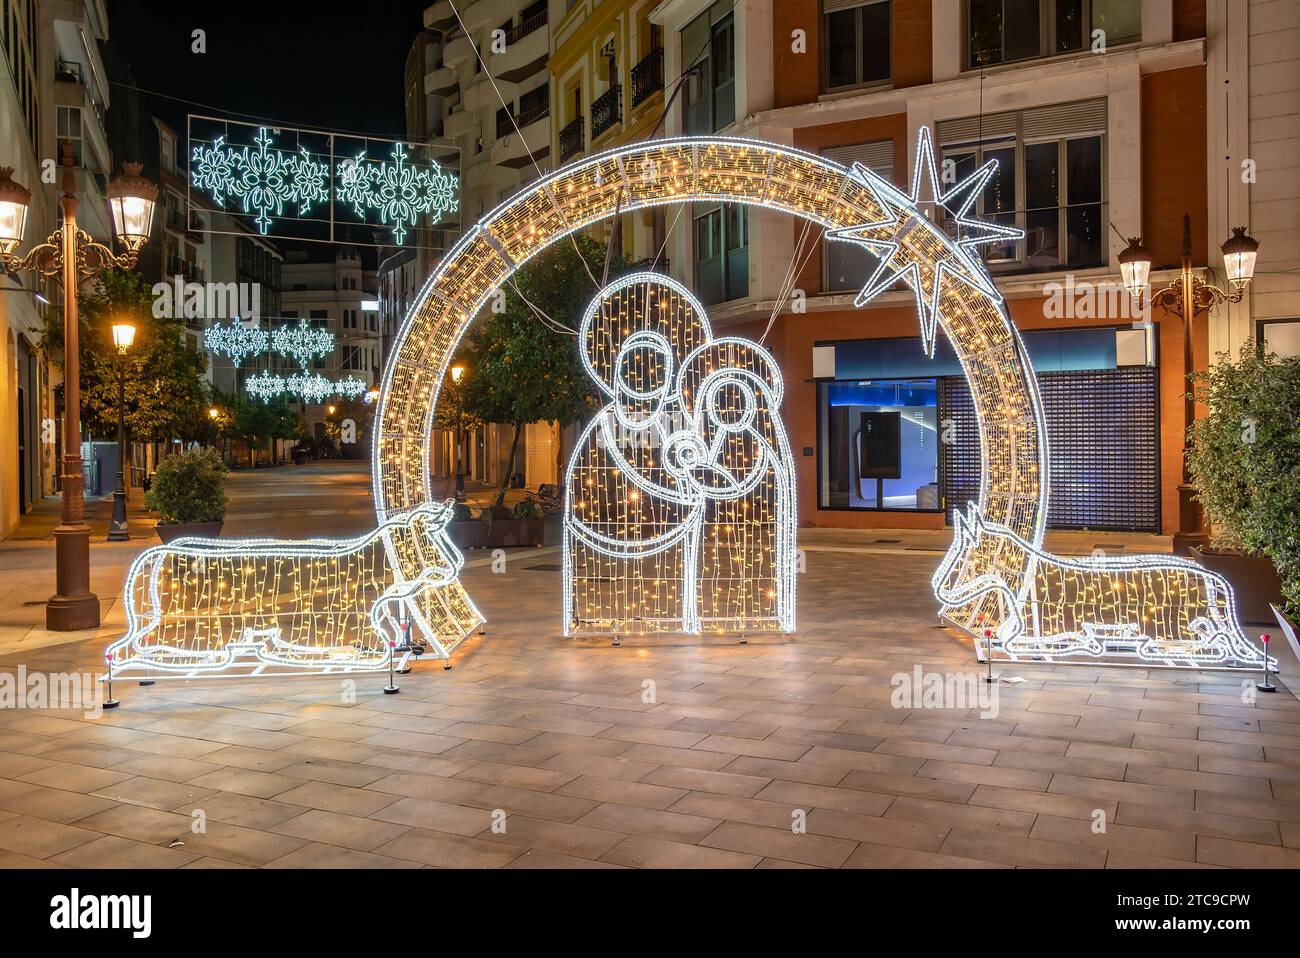 Décoration de Noël dans le centre-ville de Huelva représentant la Nativité de Jésus à Bethléem. Scène religieuse de la famille sacrée en Andalousie, Espagne Banque D'Images